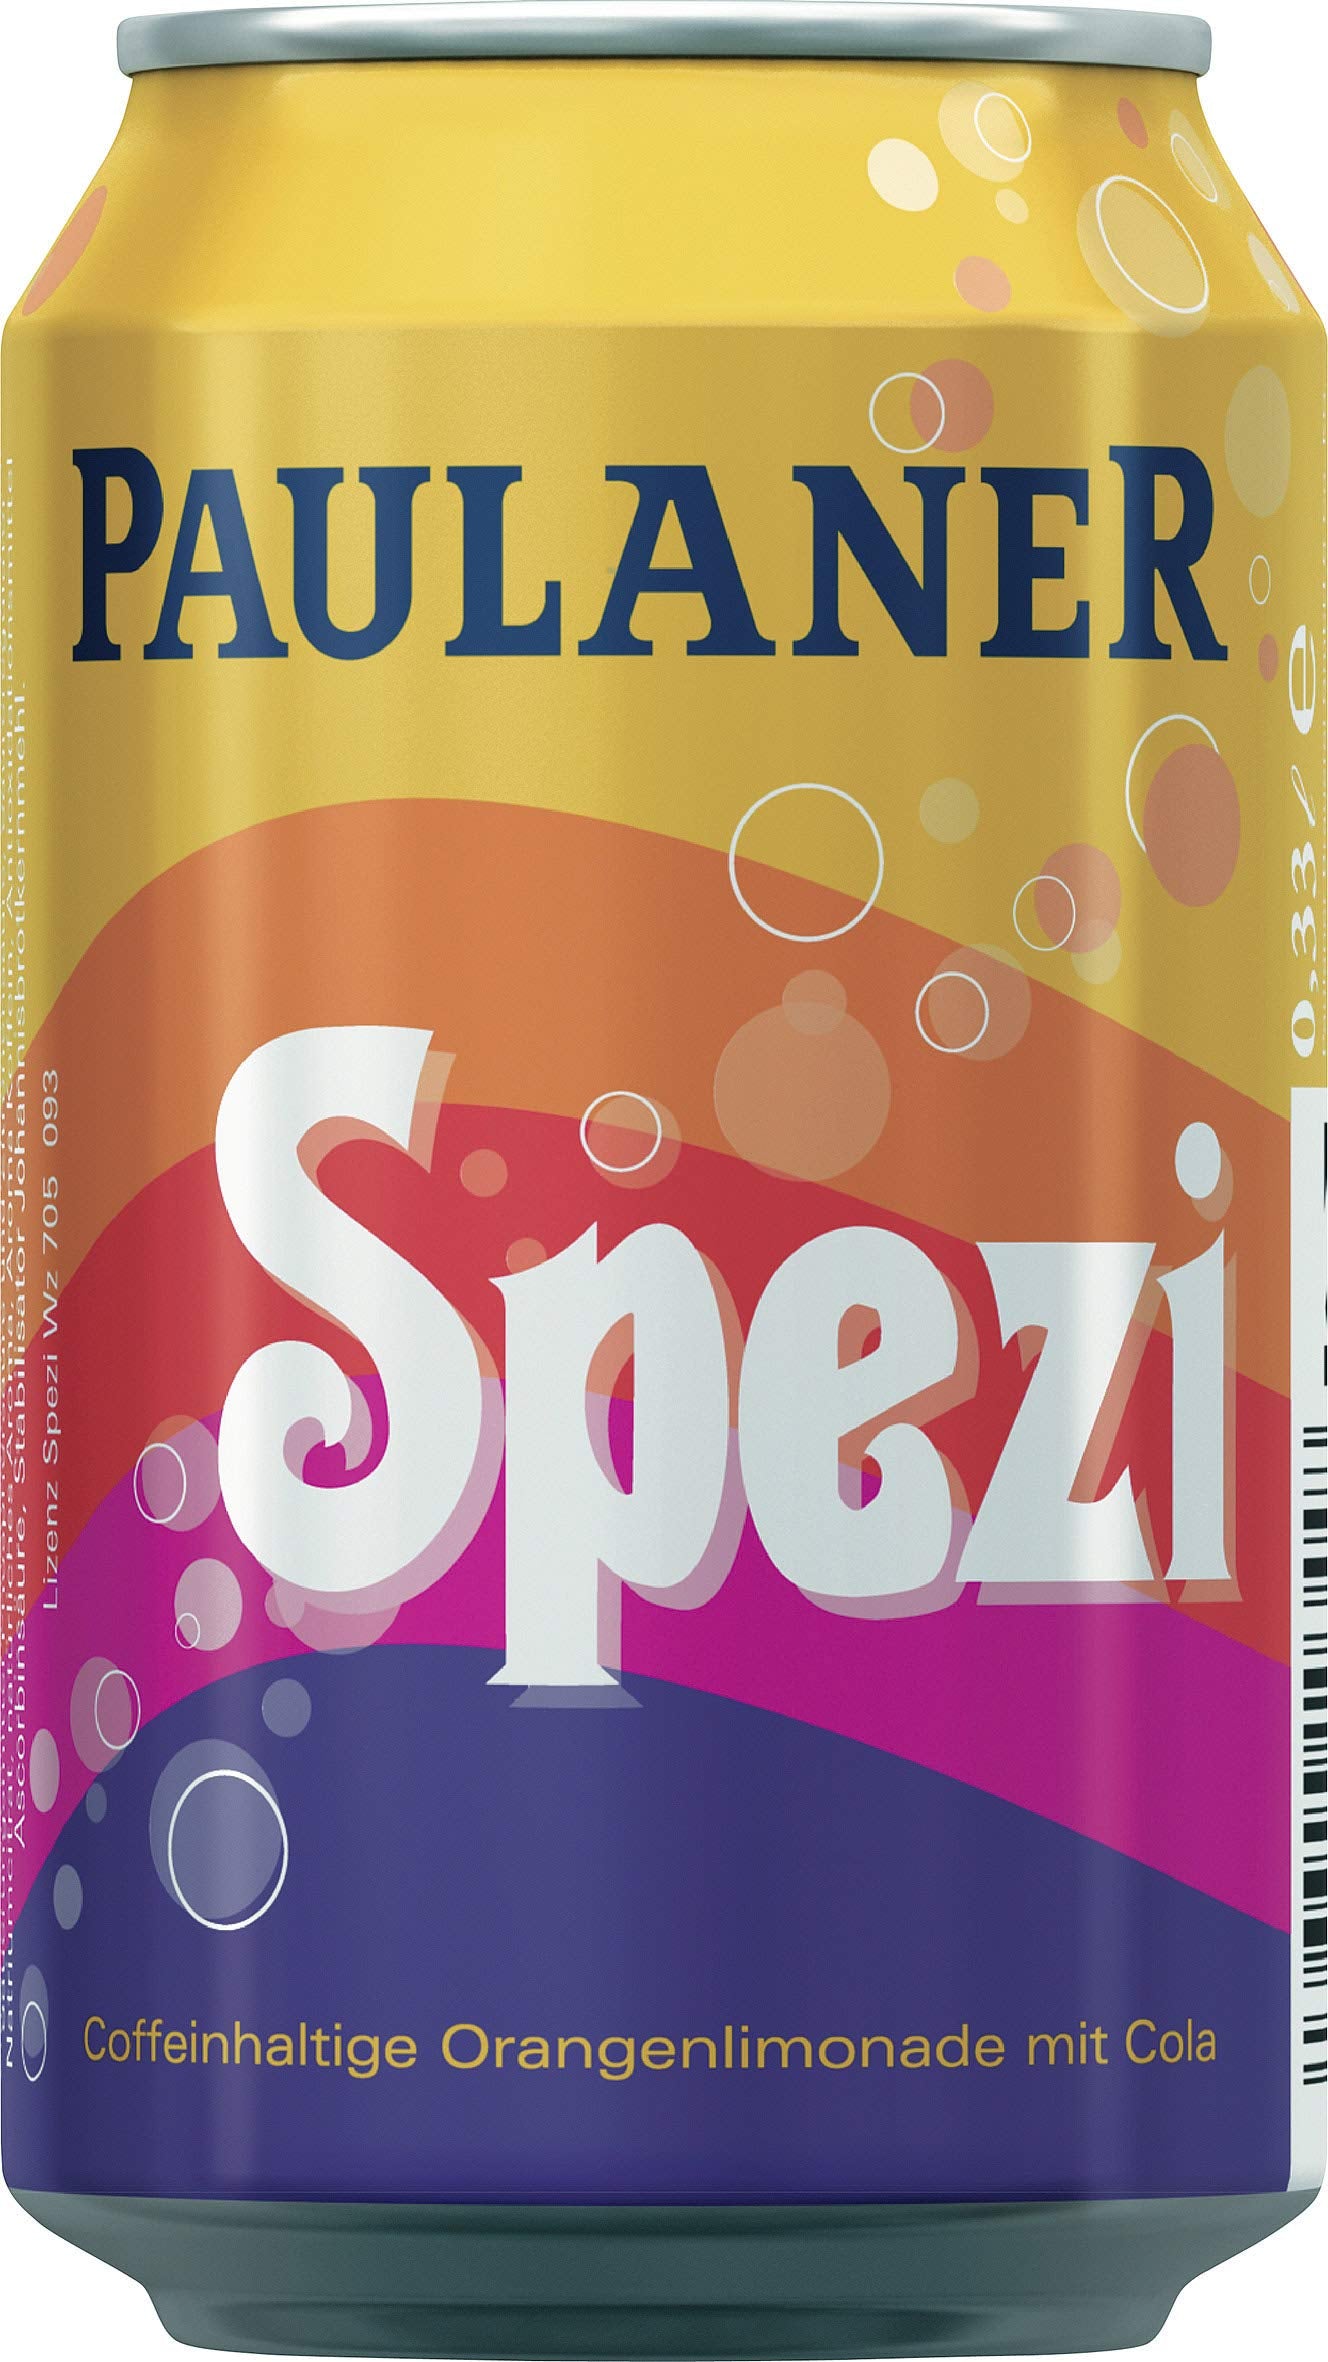 Paulaner Spezi 0.33l